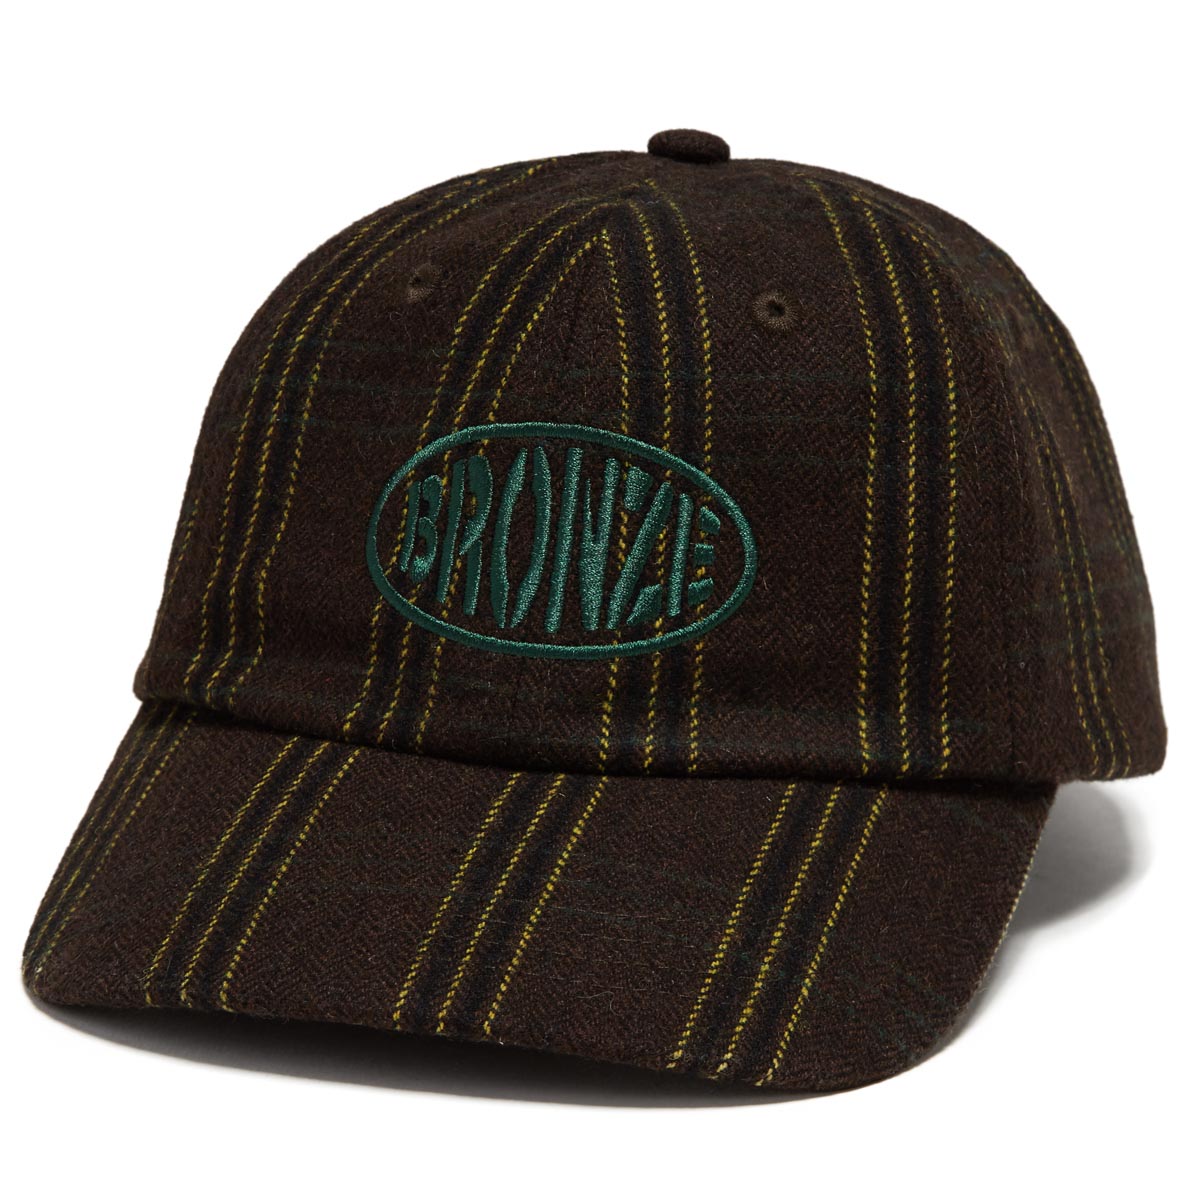 Bronze 56k Flannel Hat - Black image 1